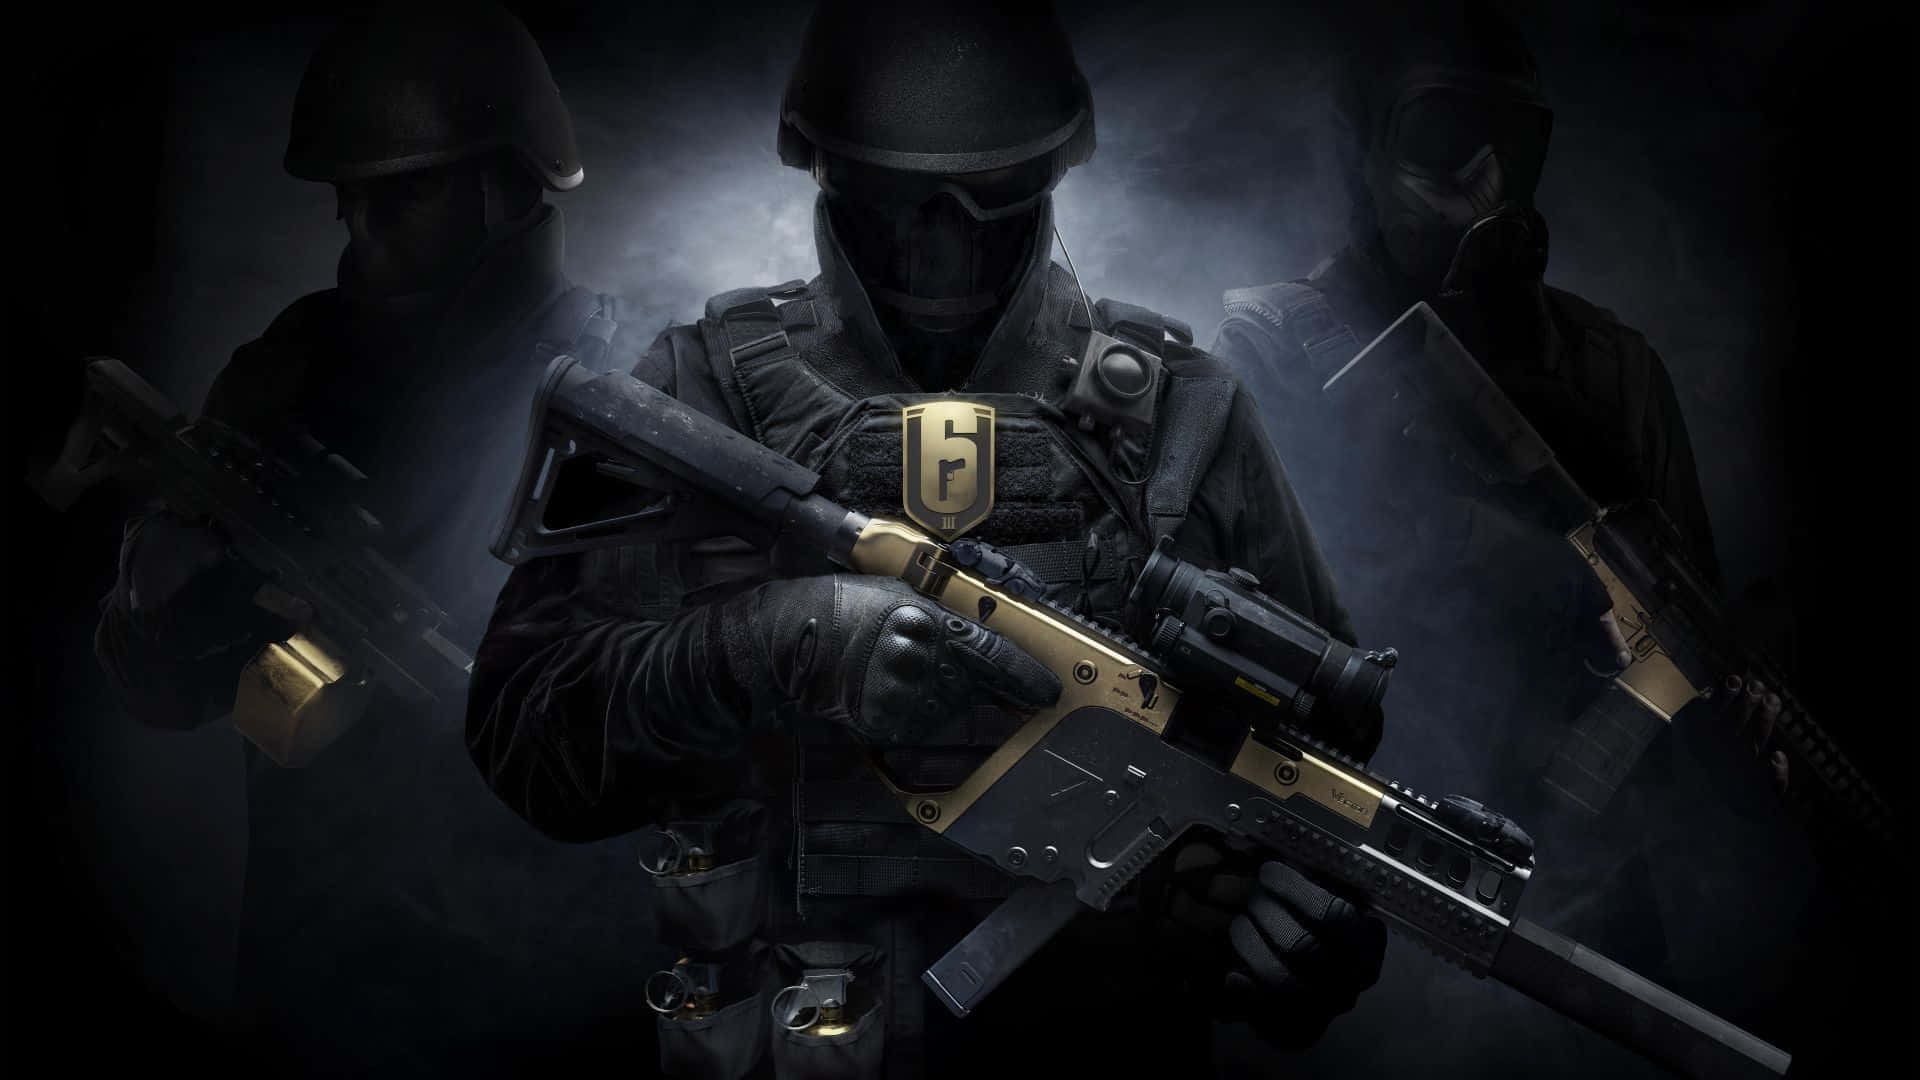 Einegruppe Von Soldaten, Die Gewehre In Der Dunkelheit Halten. Wallpaper